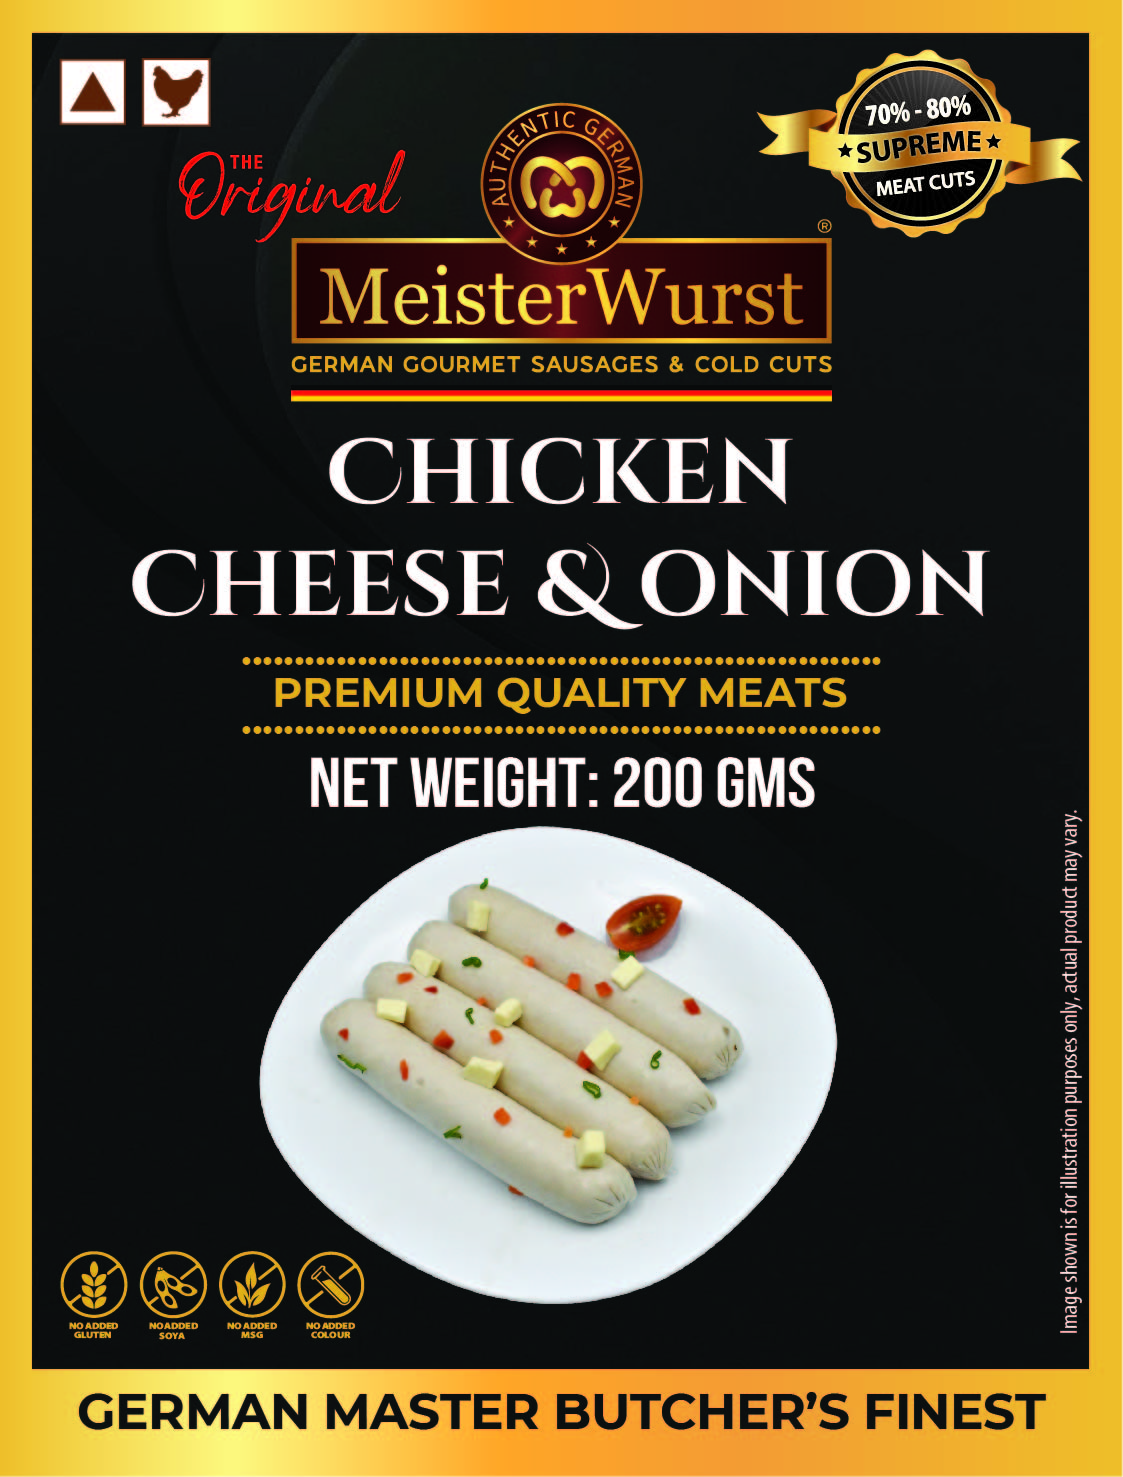 MeisterWurst Chicken Cheese & Onion - 200gms